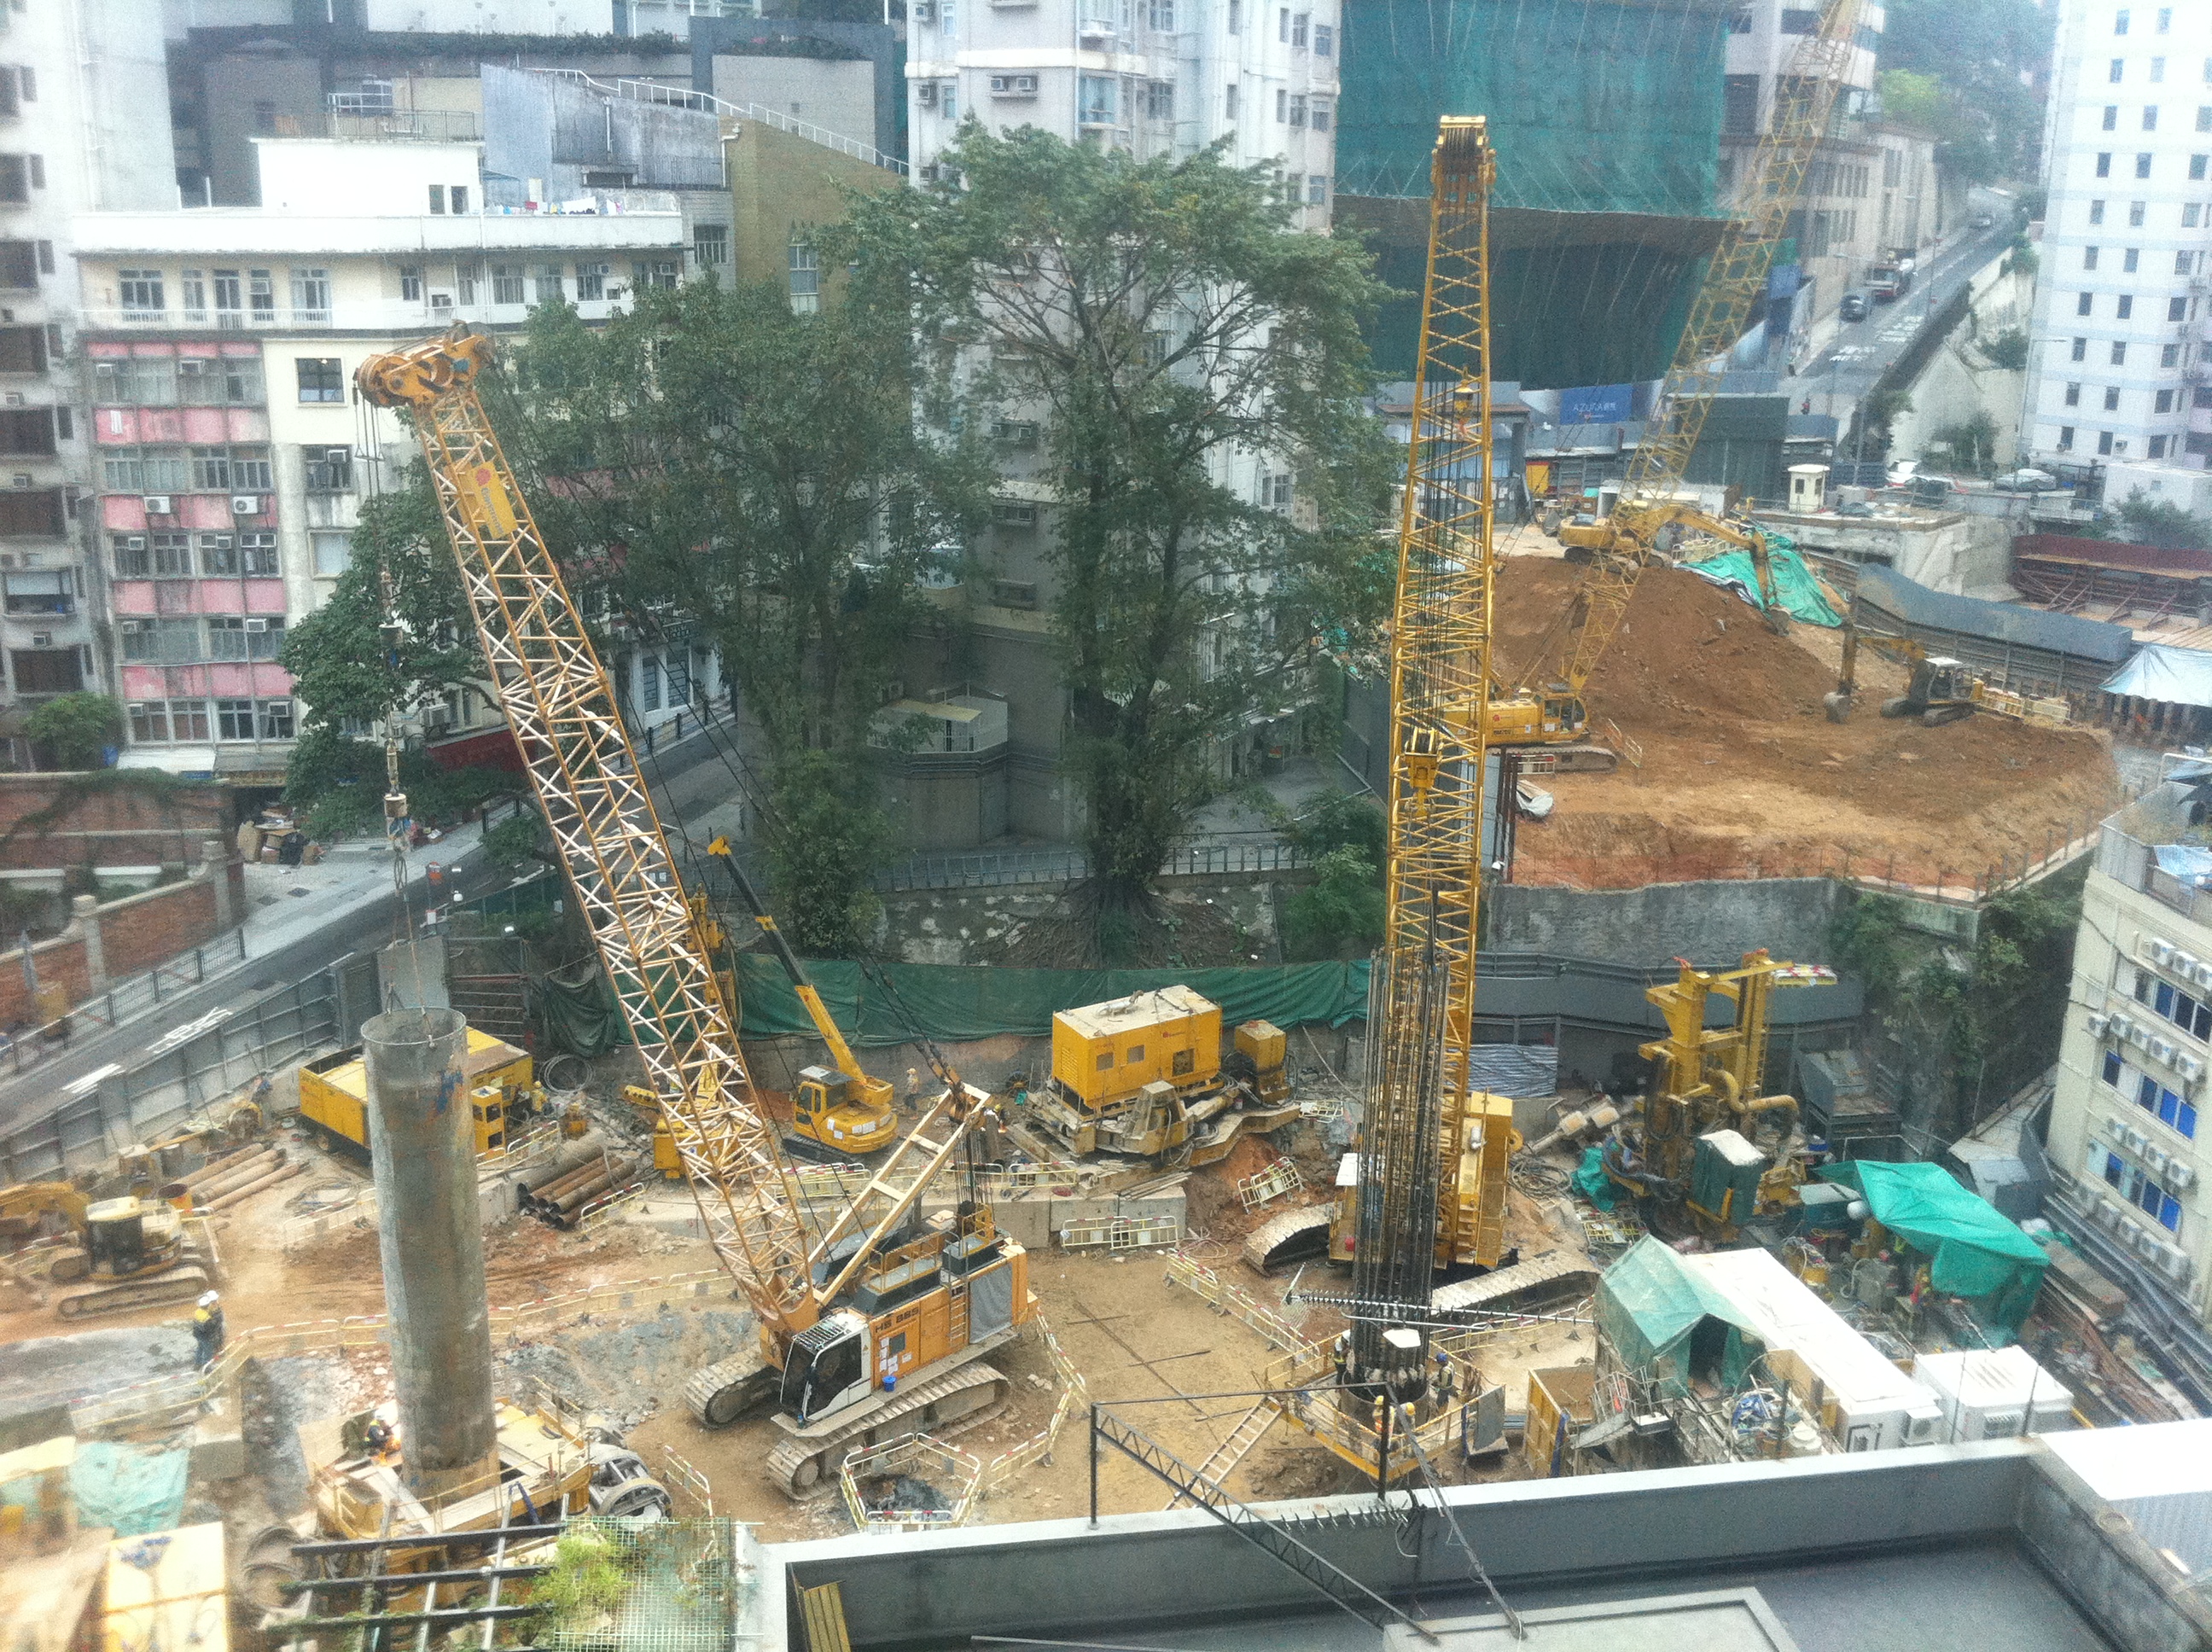 HK Mid-levels 堅道 Caine Road 寶樺軒 Casa Bella view Castle Road Construction site Jan-2012